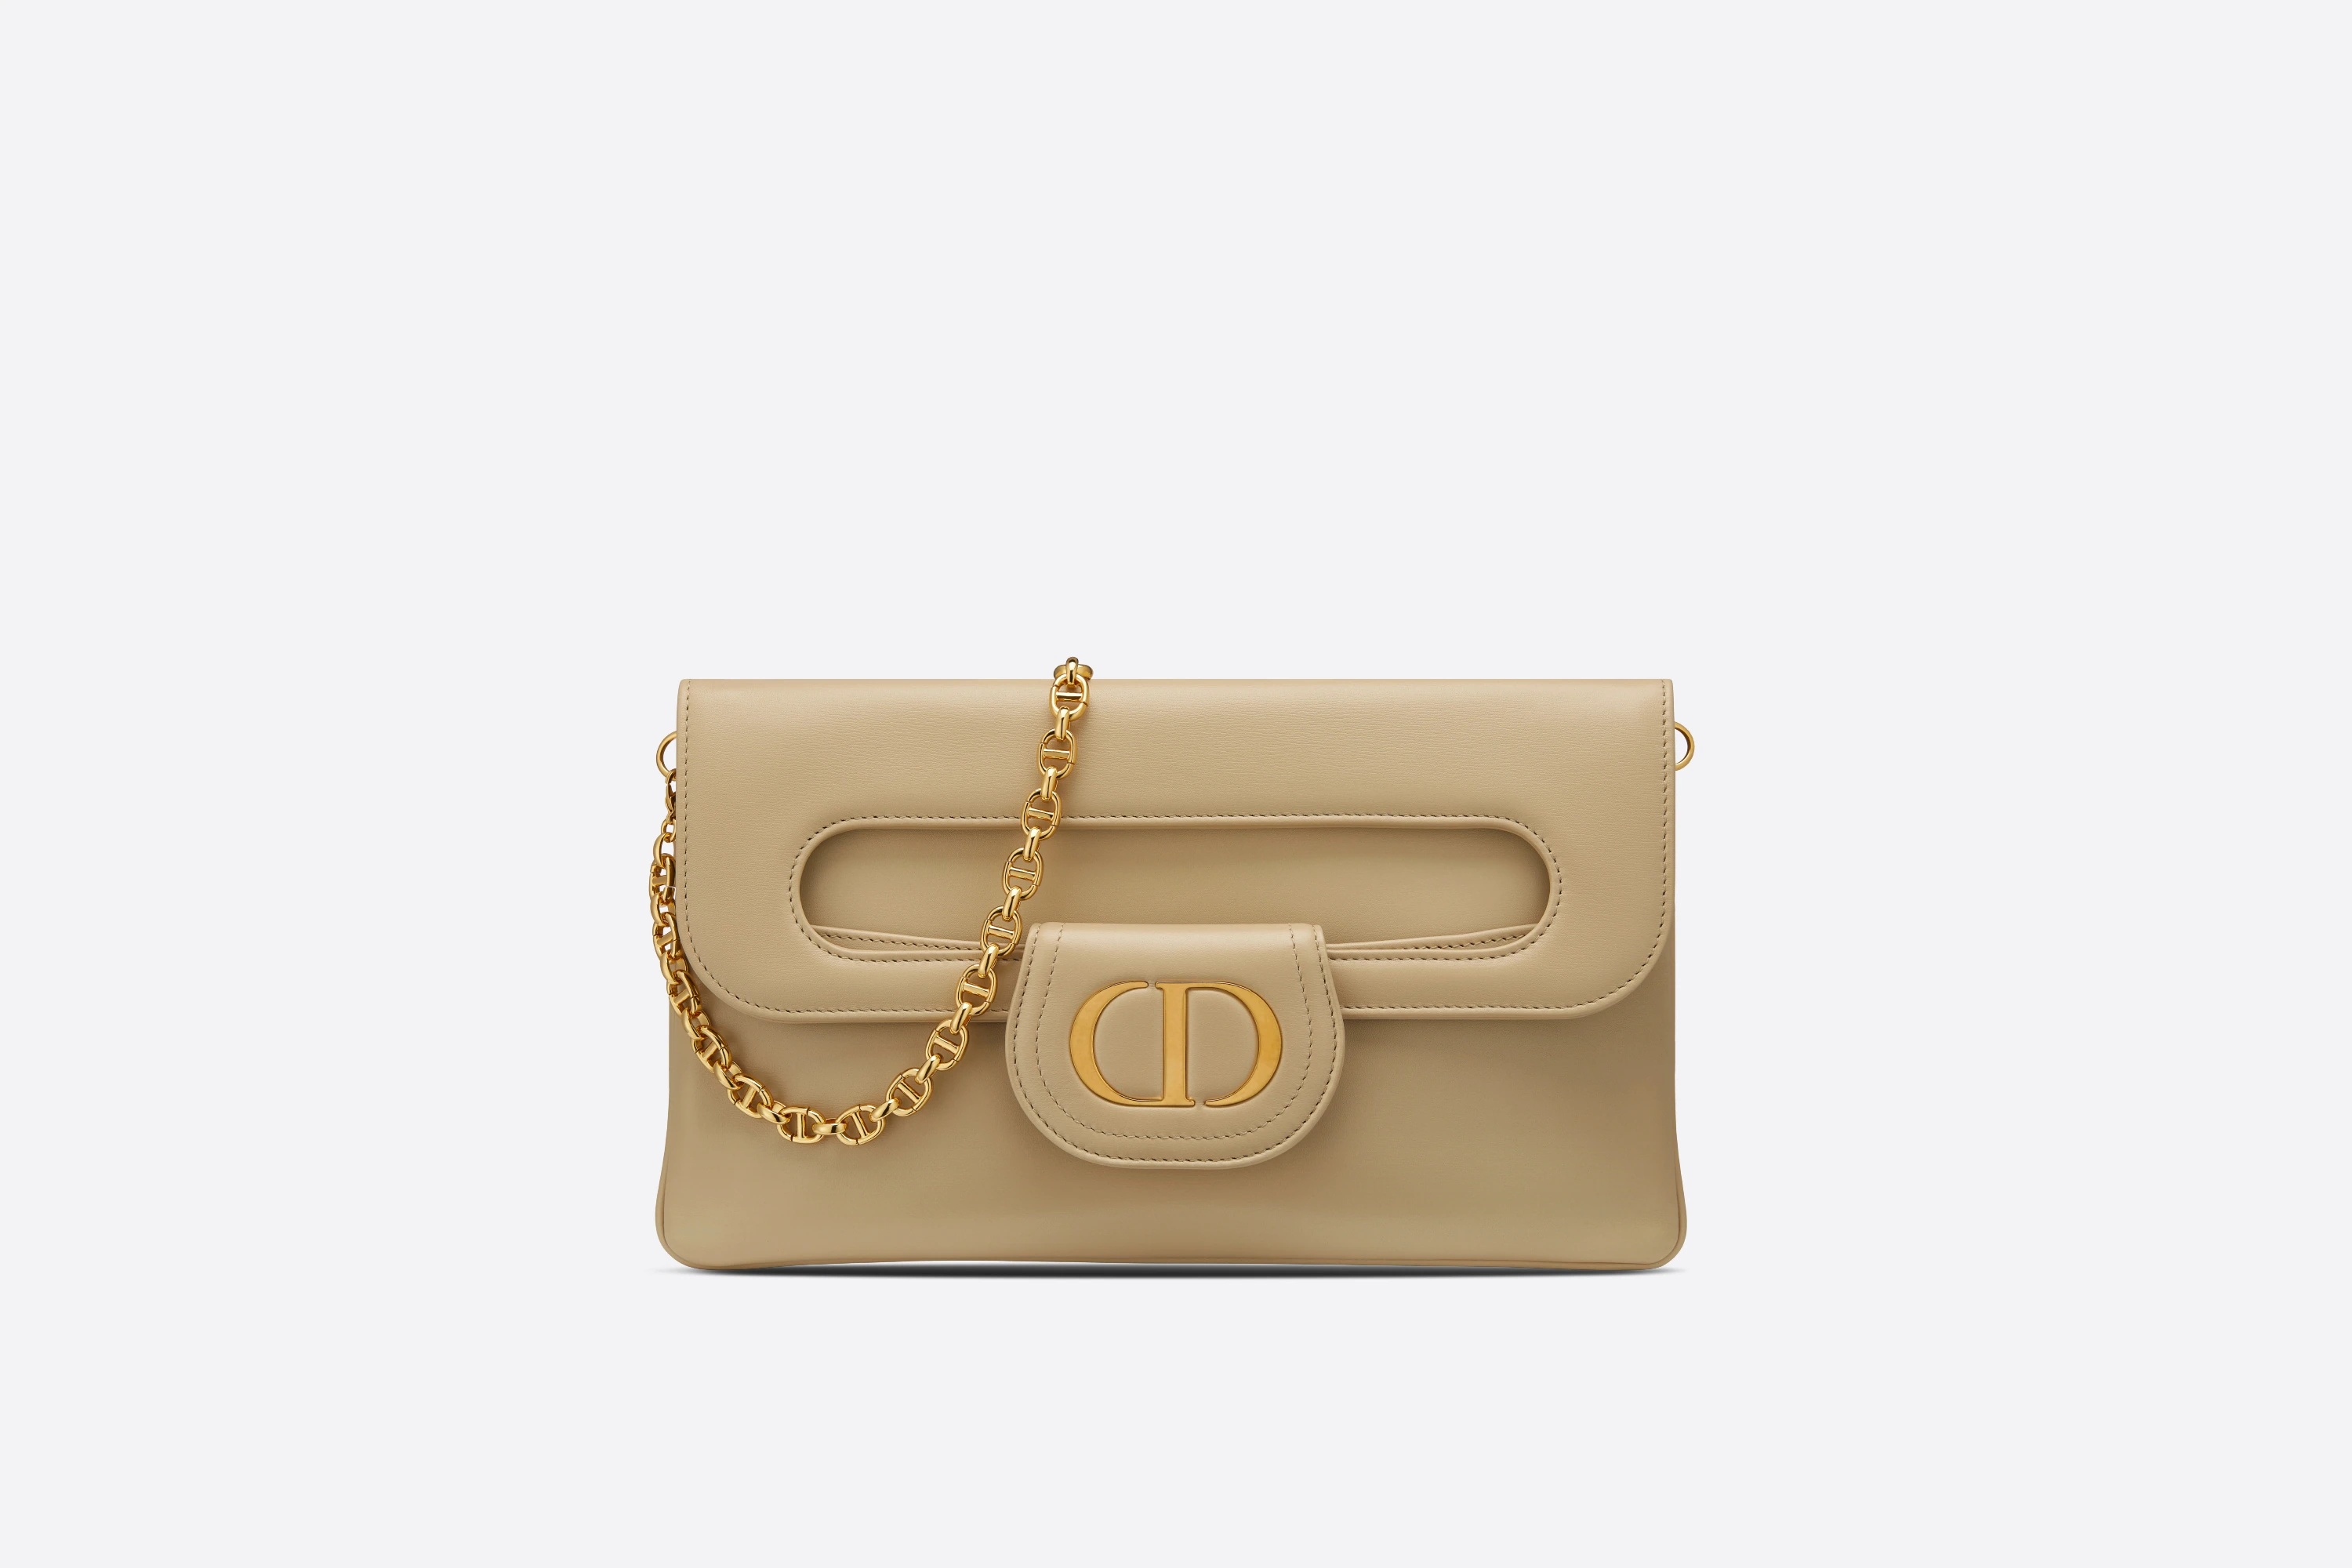 Medium DiorDouble Bag - 1